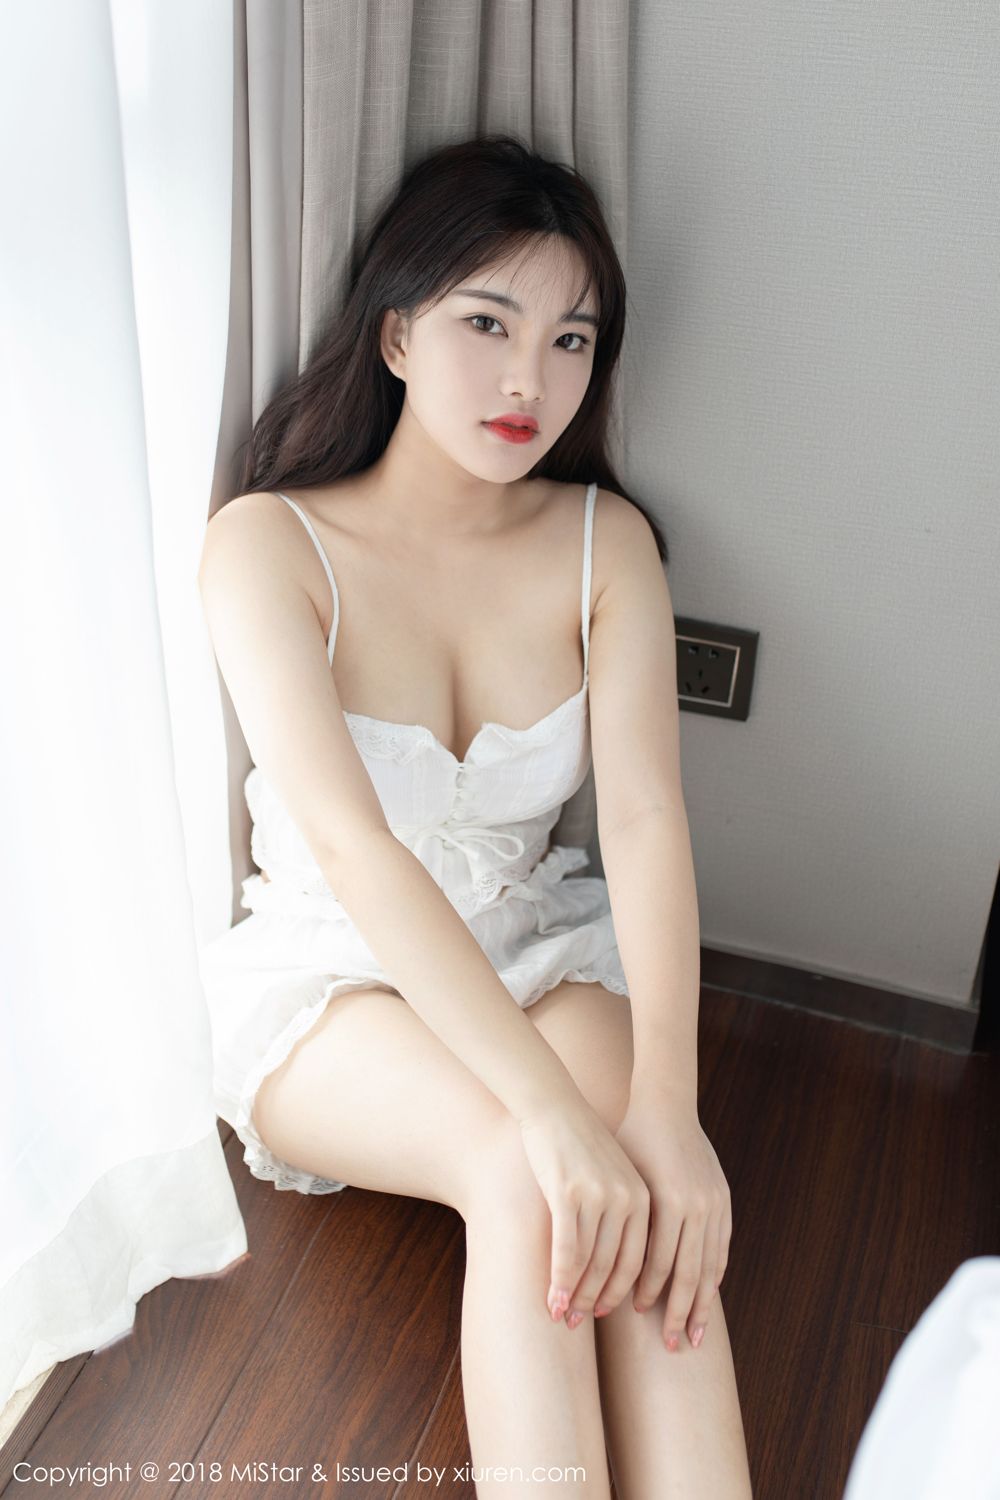 魅妍社美女模特小仓鼠镂空情趣内衣黑丝美腿首套写真